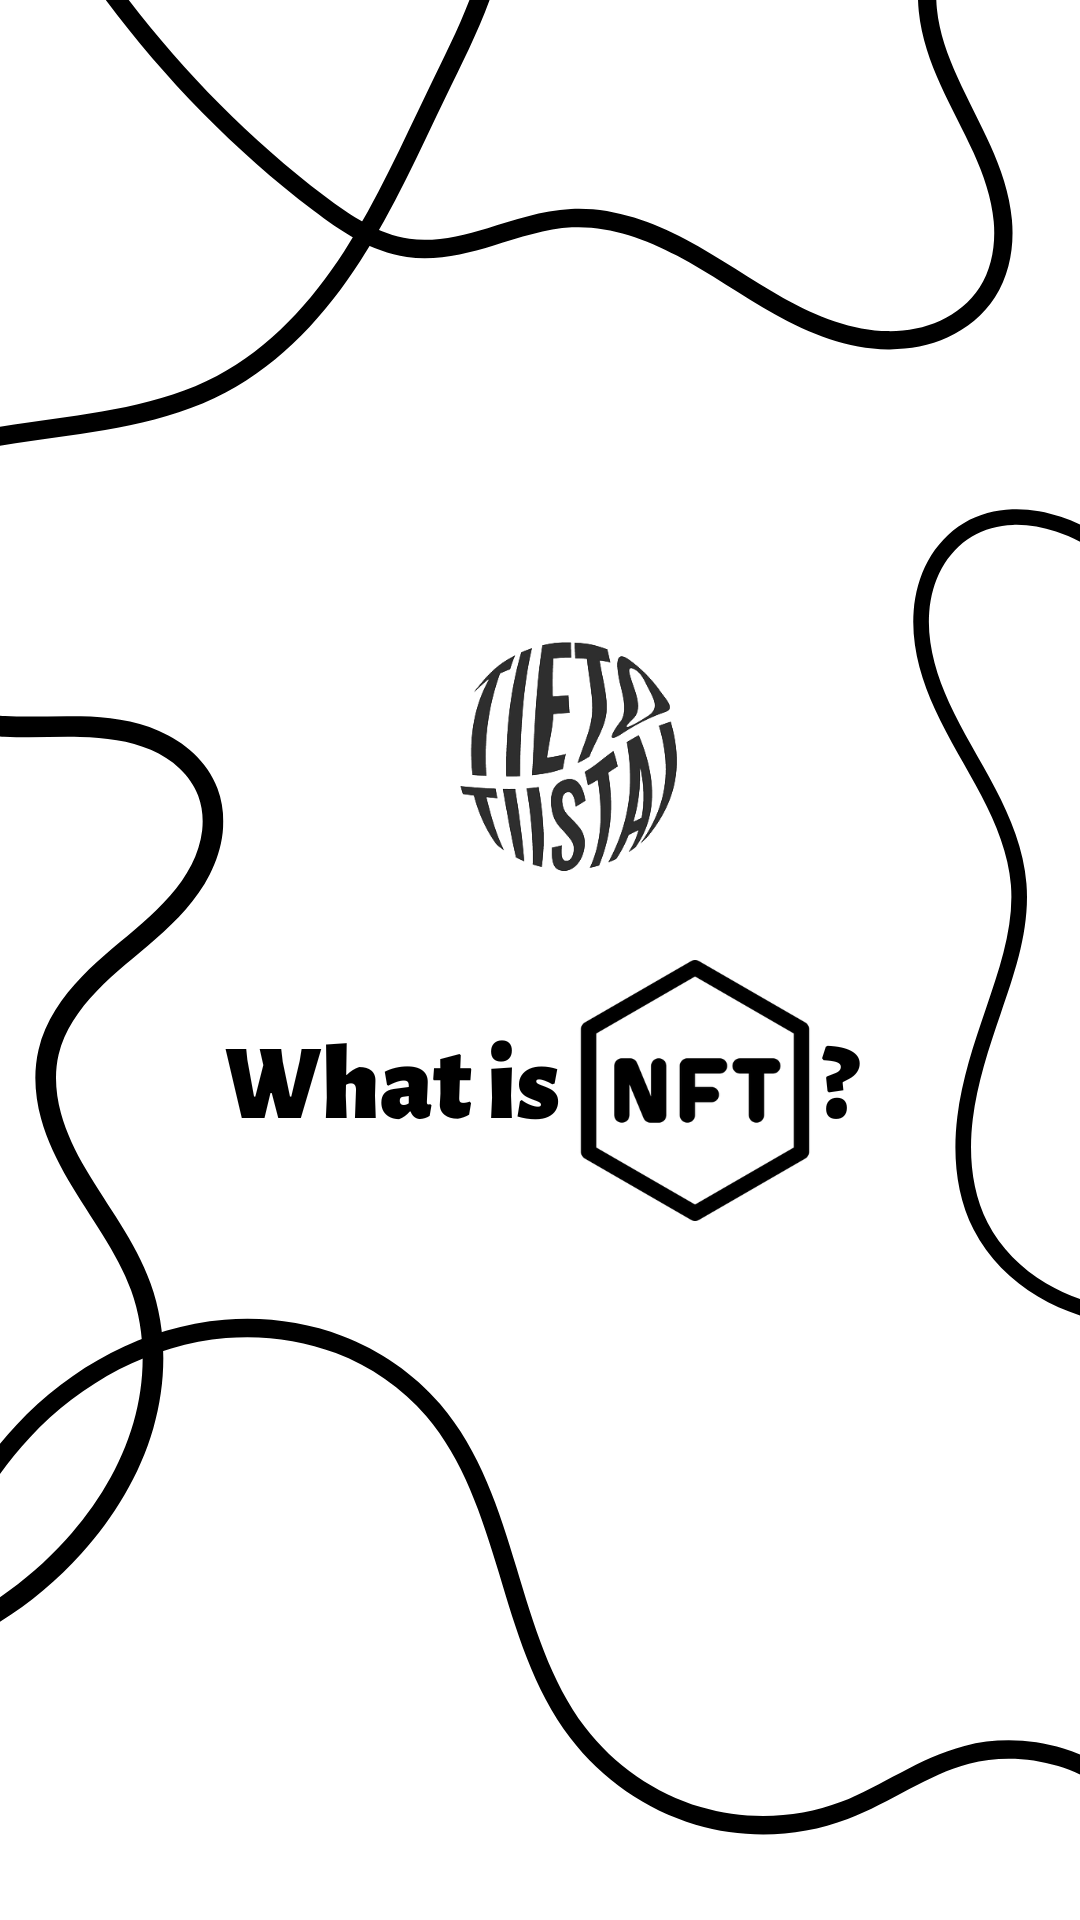 Kuvakaappaus instagramin tarinasivusta, joka on valkoinen ja jossa lukee "mikä on NFT"